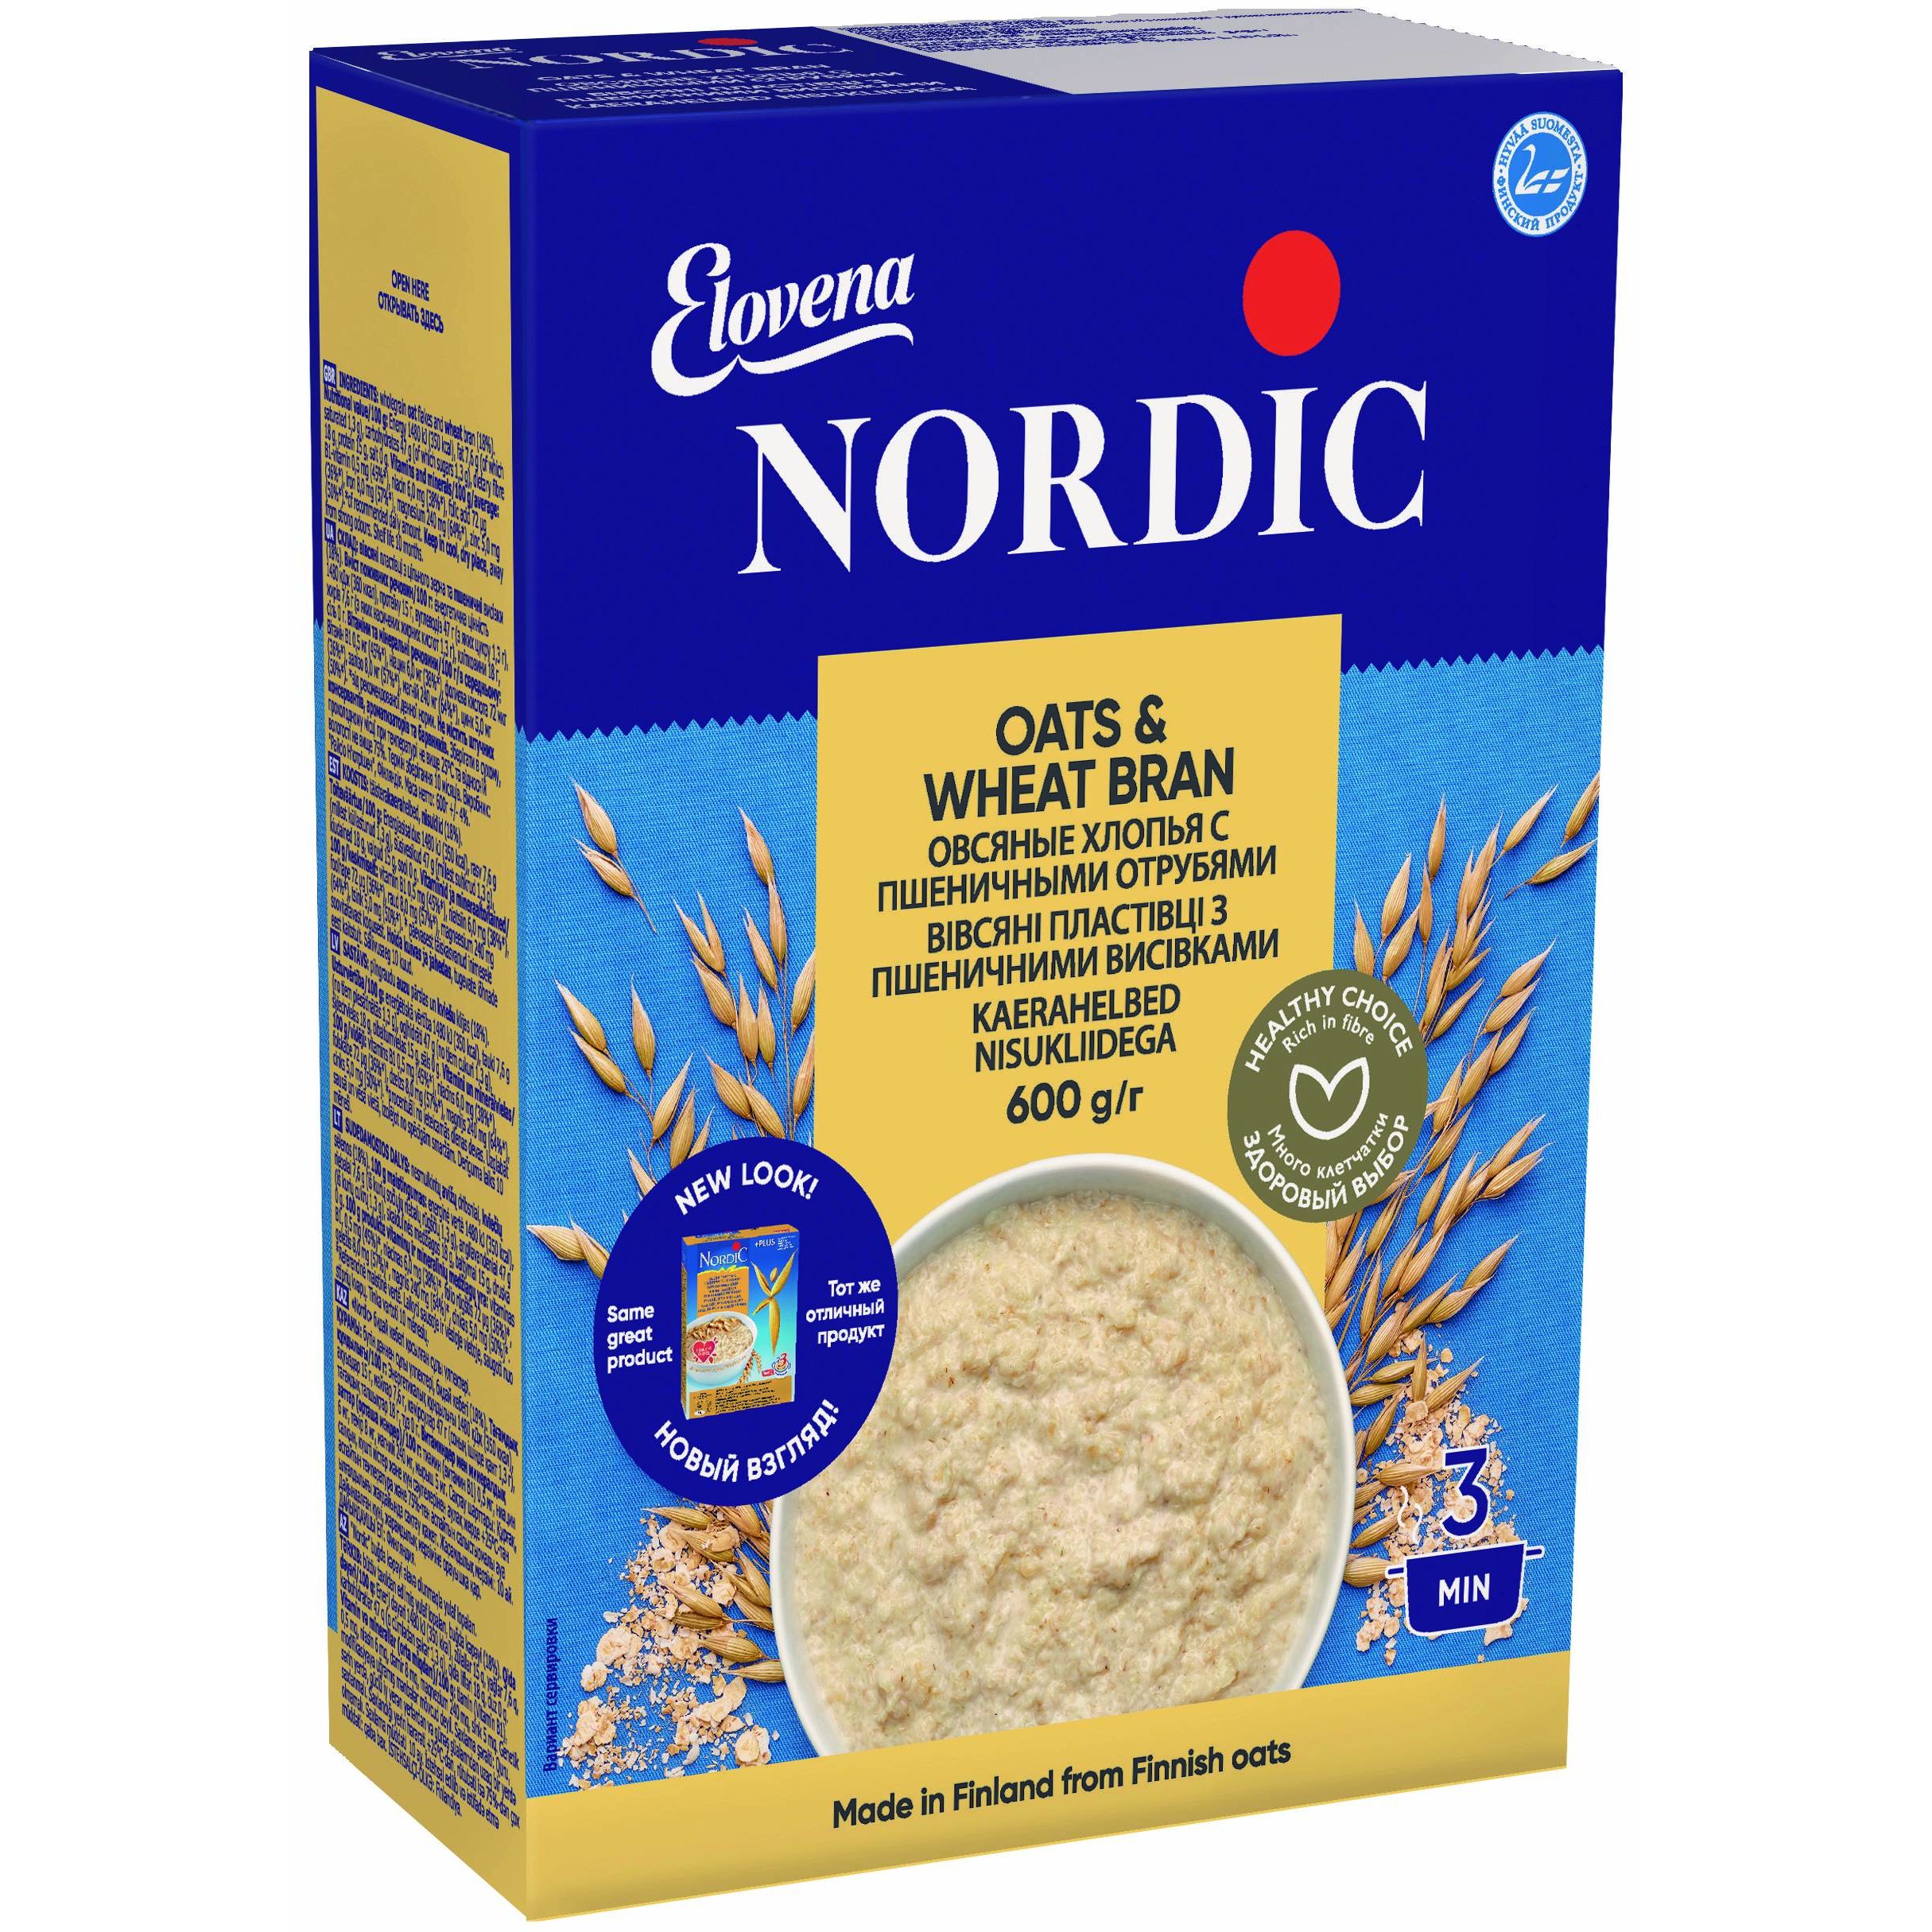 Хлопья Nordic Меліа с пшеничными отрубями 600 г (1143) - фото 1